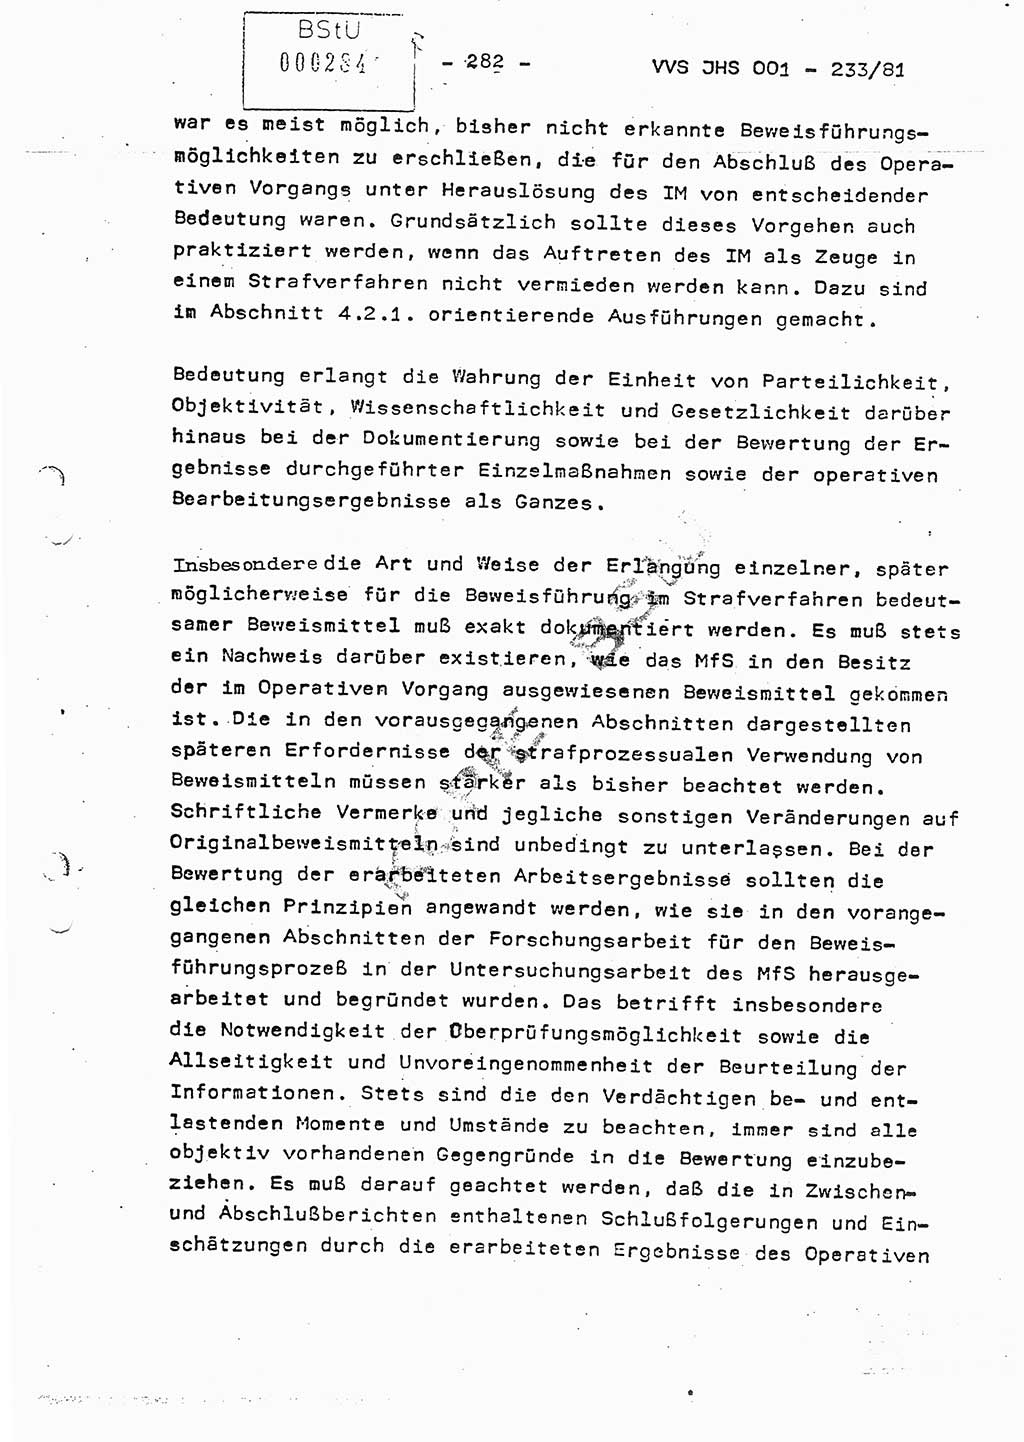 Dissertation Oberstleutnant Horst Zank (JHS), Oberstleutnant Dr. Karl-Heinz Knoblauch (JHS), Oberstleutnant Gustav-Adolf Kowalewski (HA Ⅸ), Oberstleutnant Wolfgang Plötner (HA Ⅸ), Ministerium für Staatssicherheit (MfS) [Deutsche Demokratische Republik (DDR)], Juristische Hochschule (JHS), Vertrauliche Verschlußsache (VVS) o001-233/81, Potsdam 1981, Blatt 282 (Diss. MfS DDR JHS VVS o001-233/81 1981, Bl. 282)